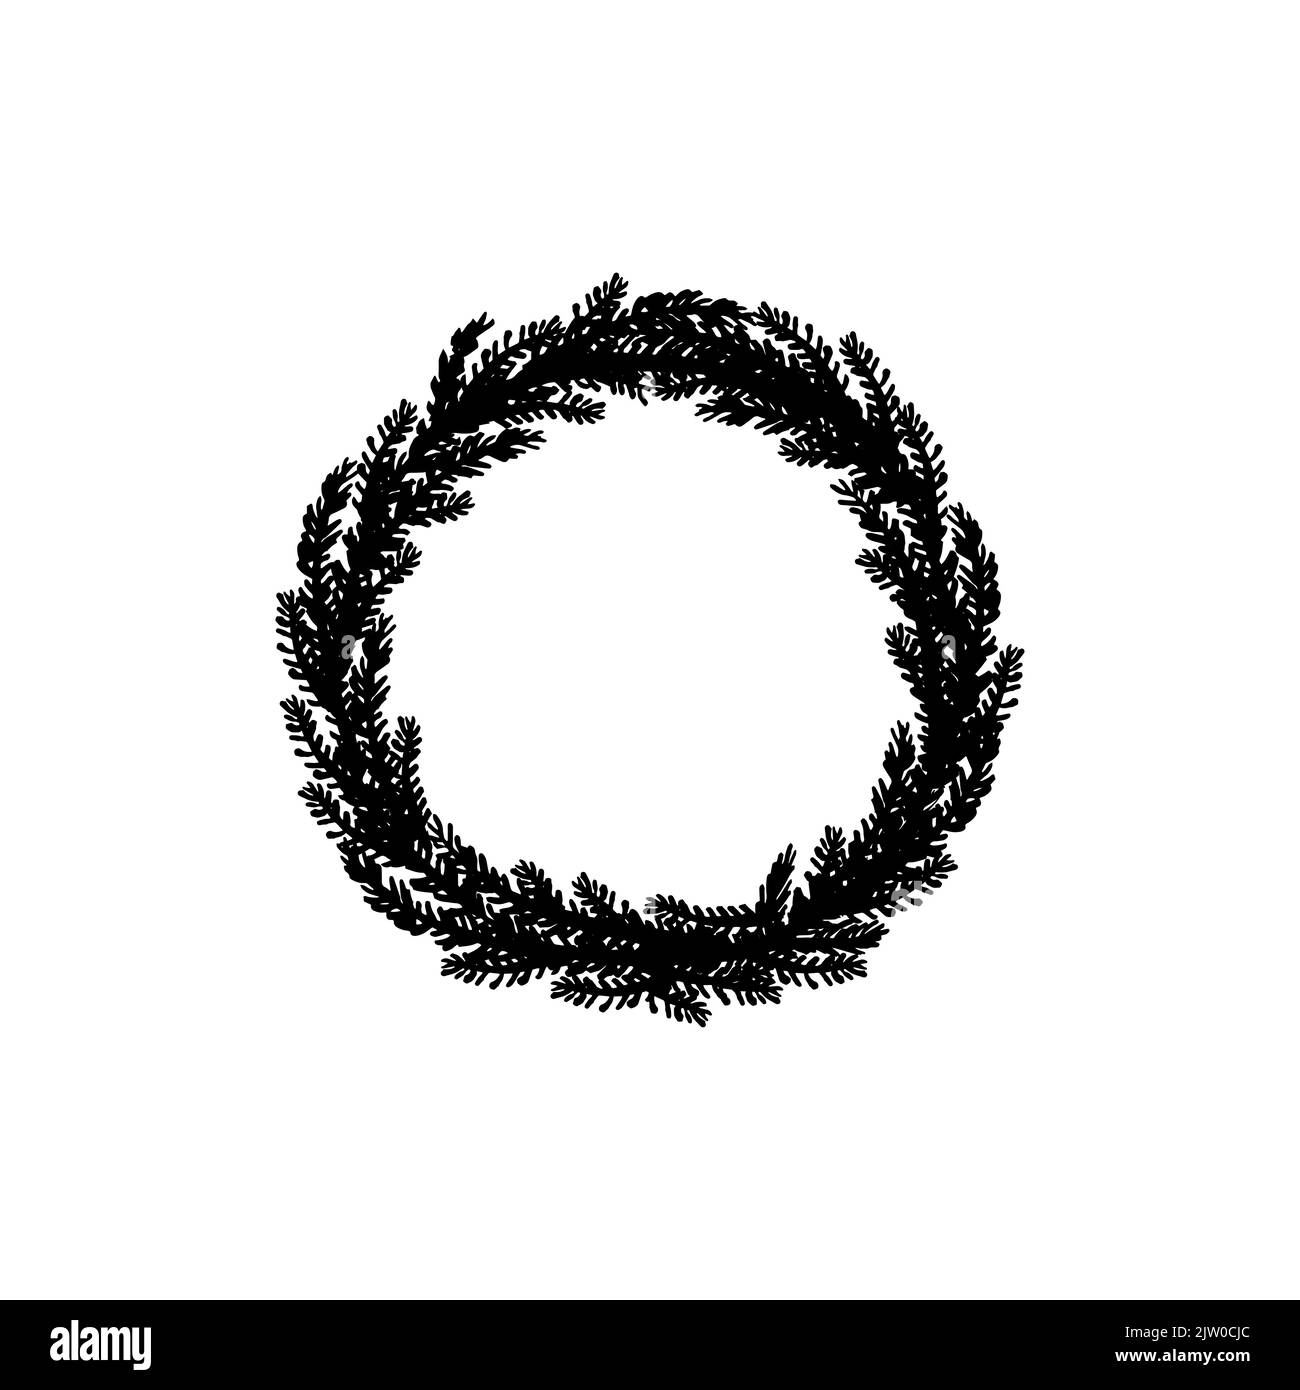 Corona rotonda nera con rami di abete dipinti a mano isolati su fondo bianco. Illustrazione Vettoriale